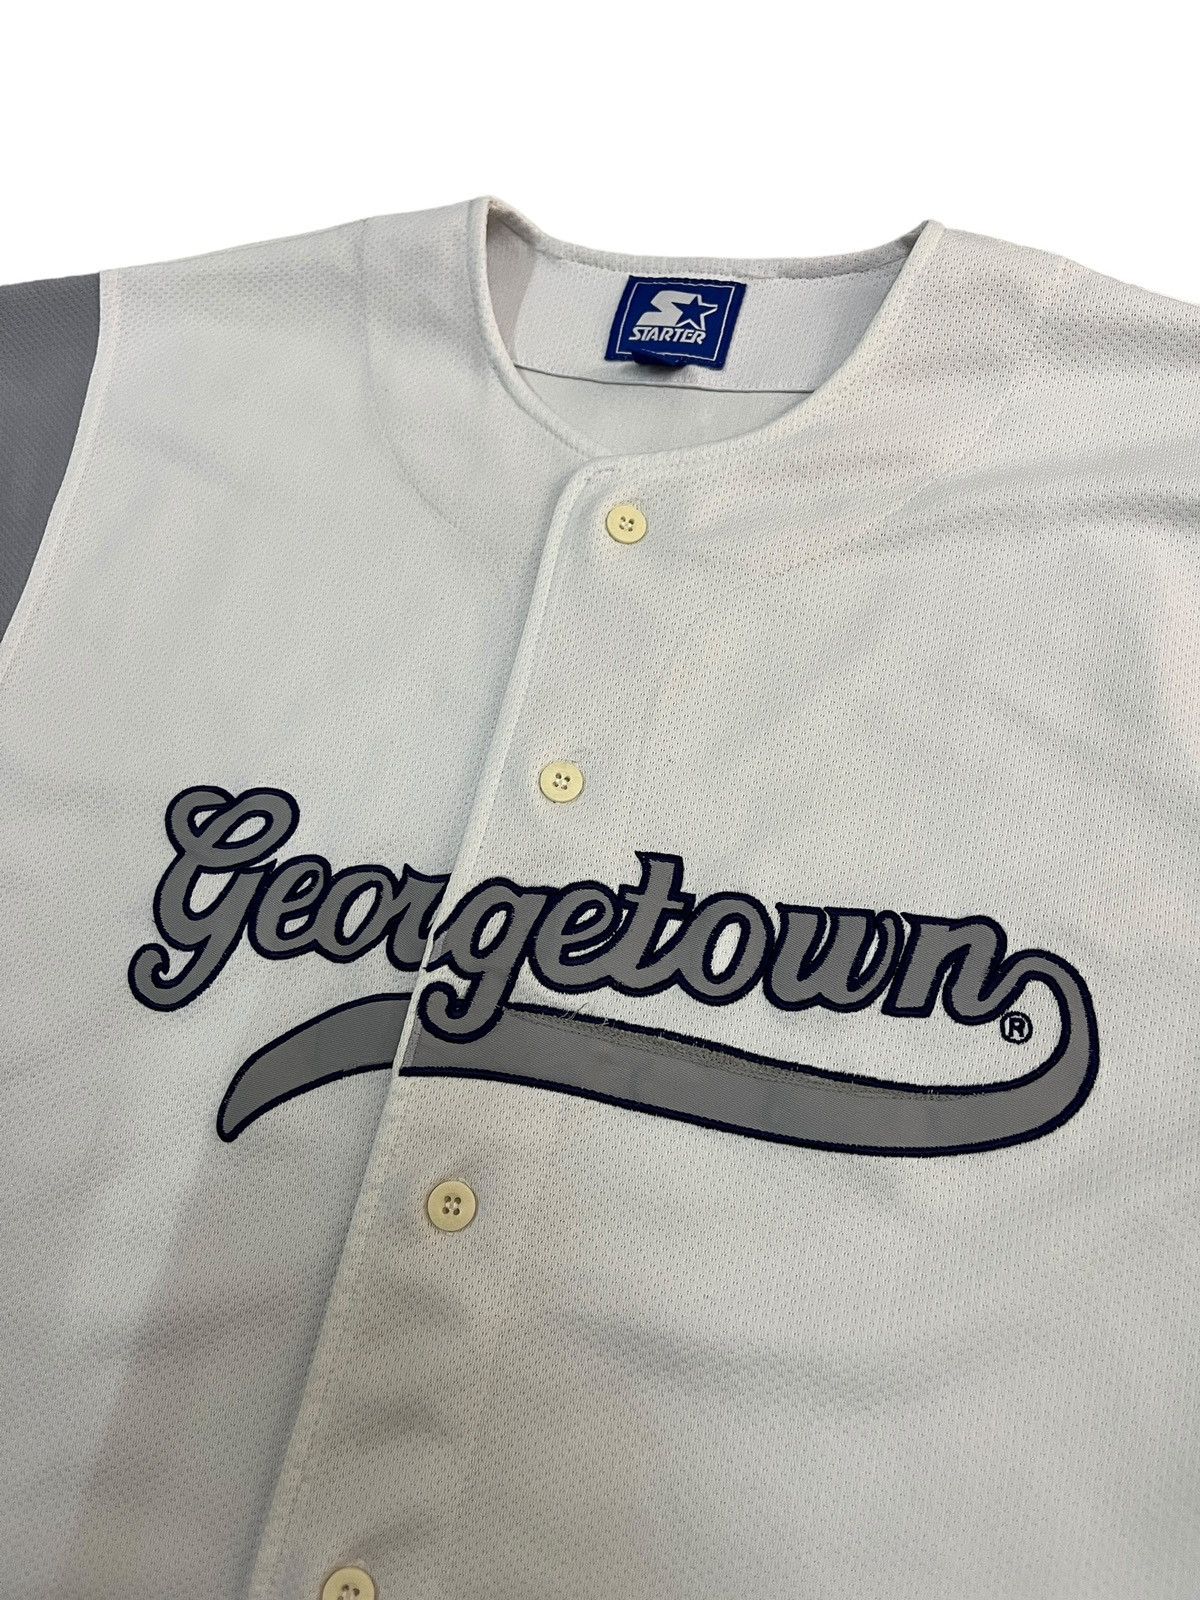 Vintage Starter Georgetown Hoyas Baseball Jersey - 2